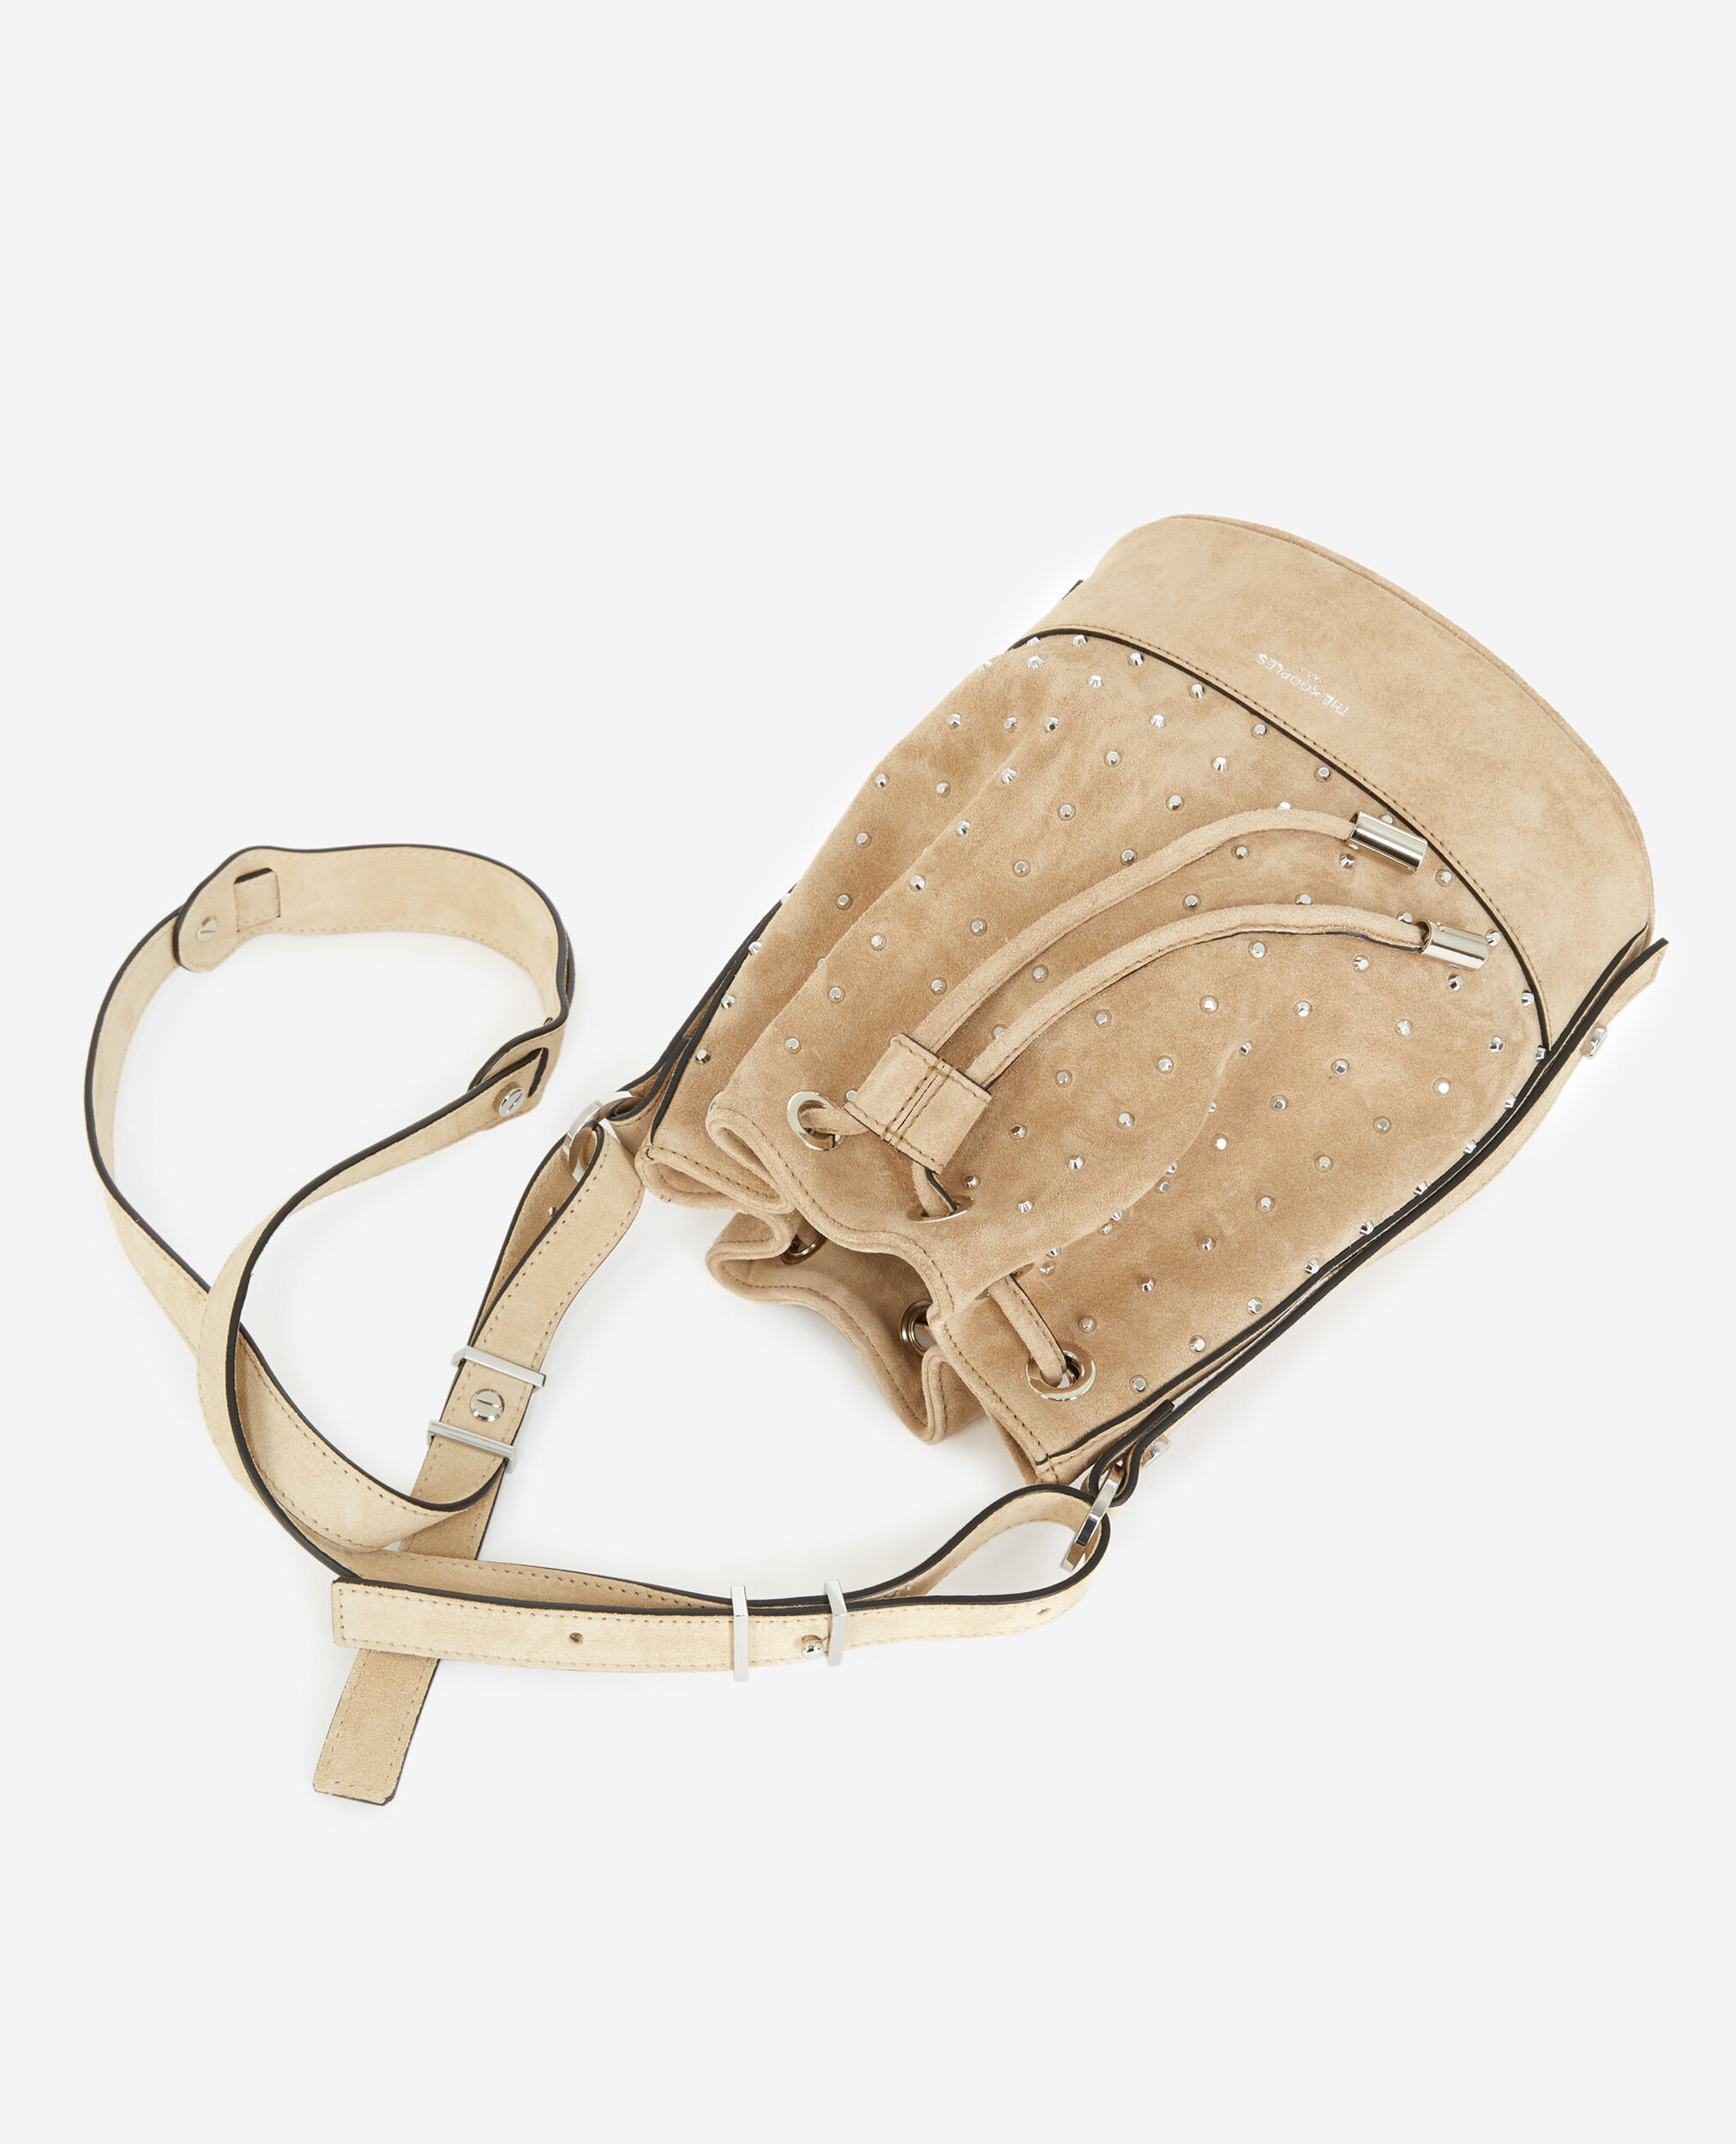 Studded Medium Tina bag in beige suede, BEIGE, hi-res image number null